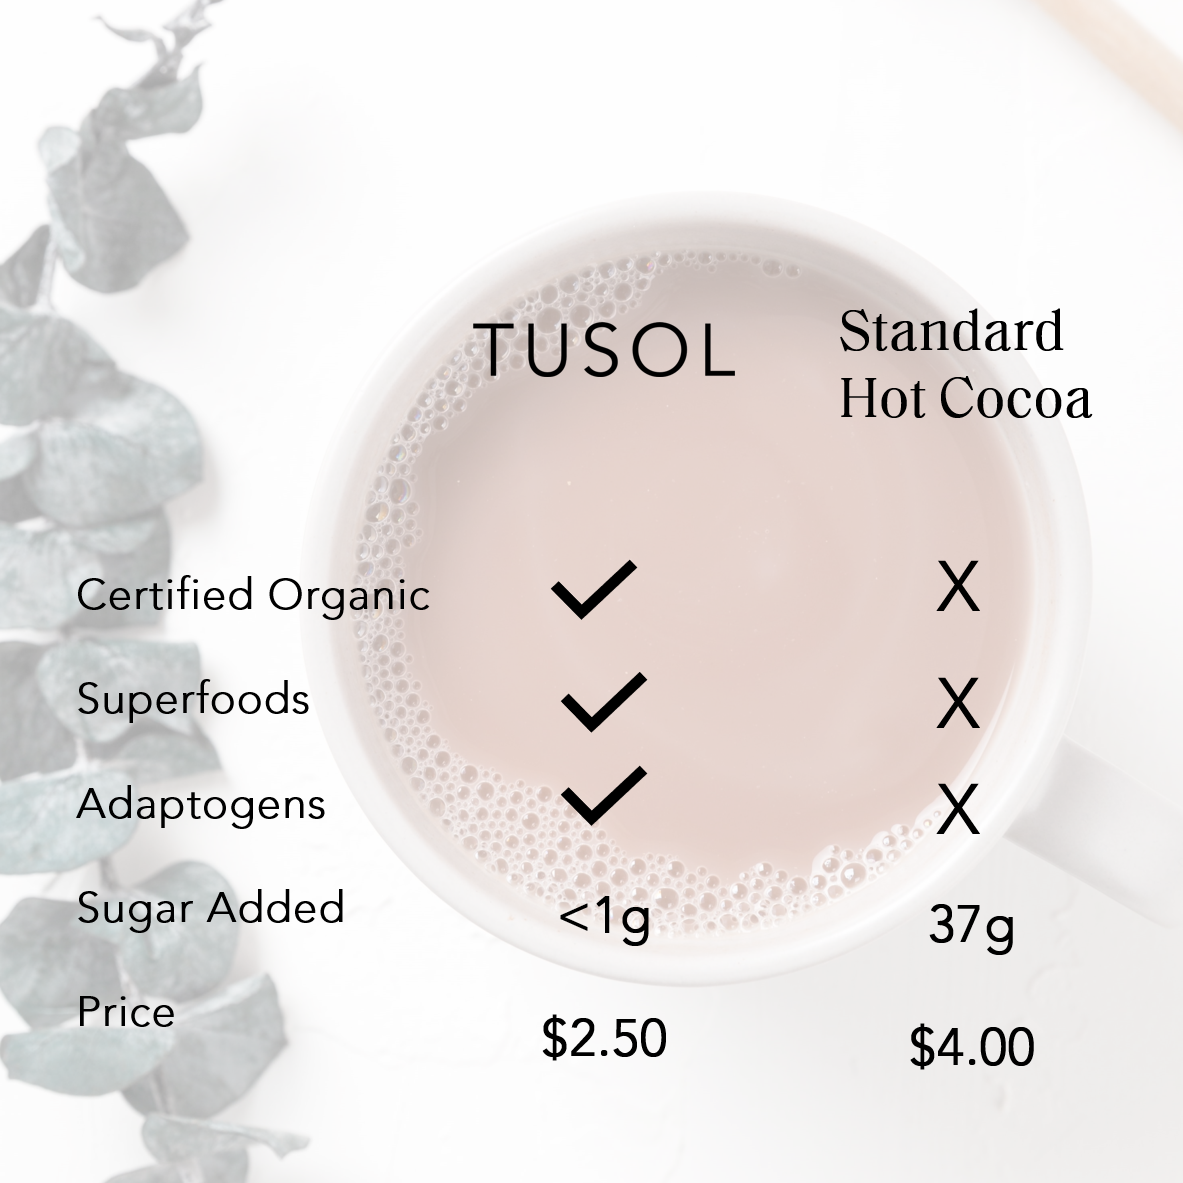 TUSOL x Fringe: Organic Latte Kit ($95 Value)